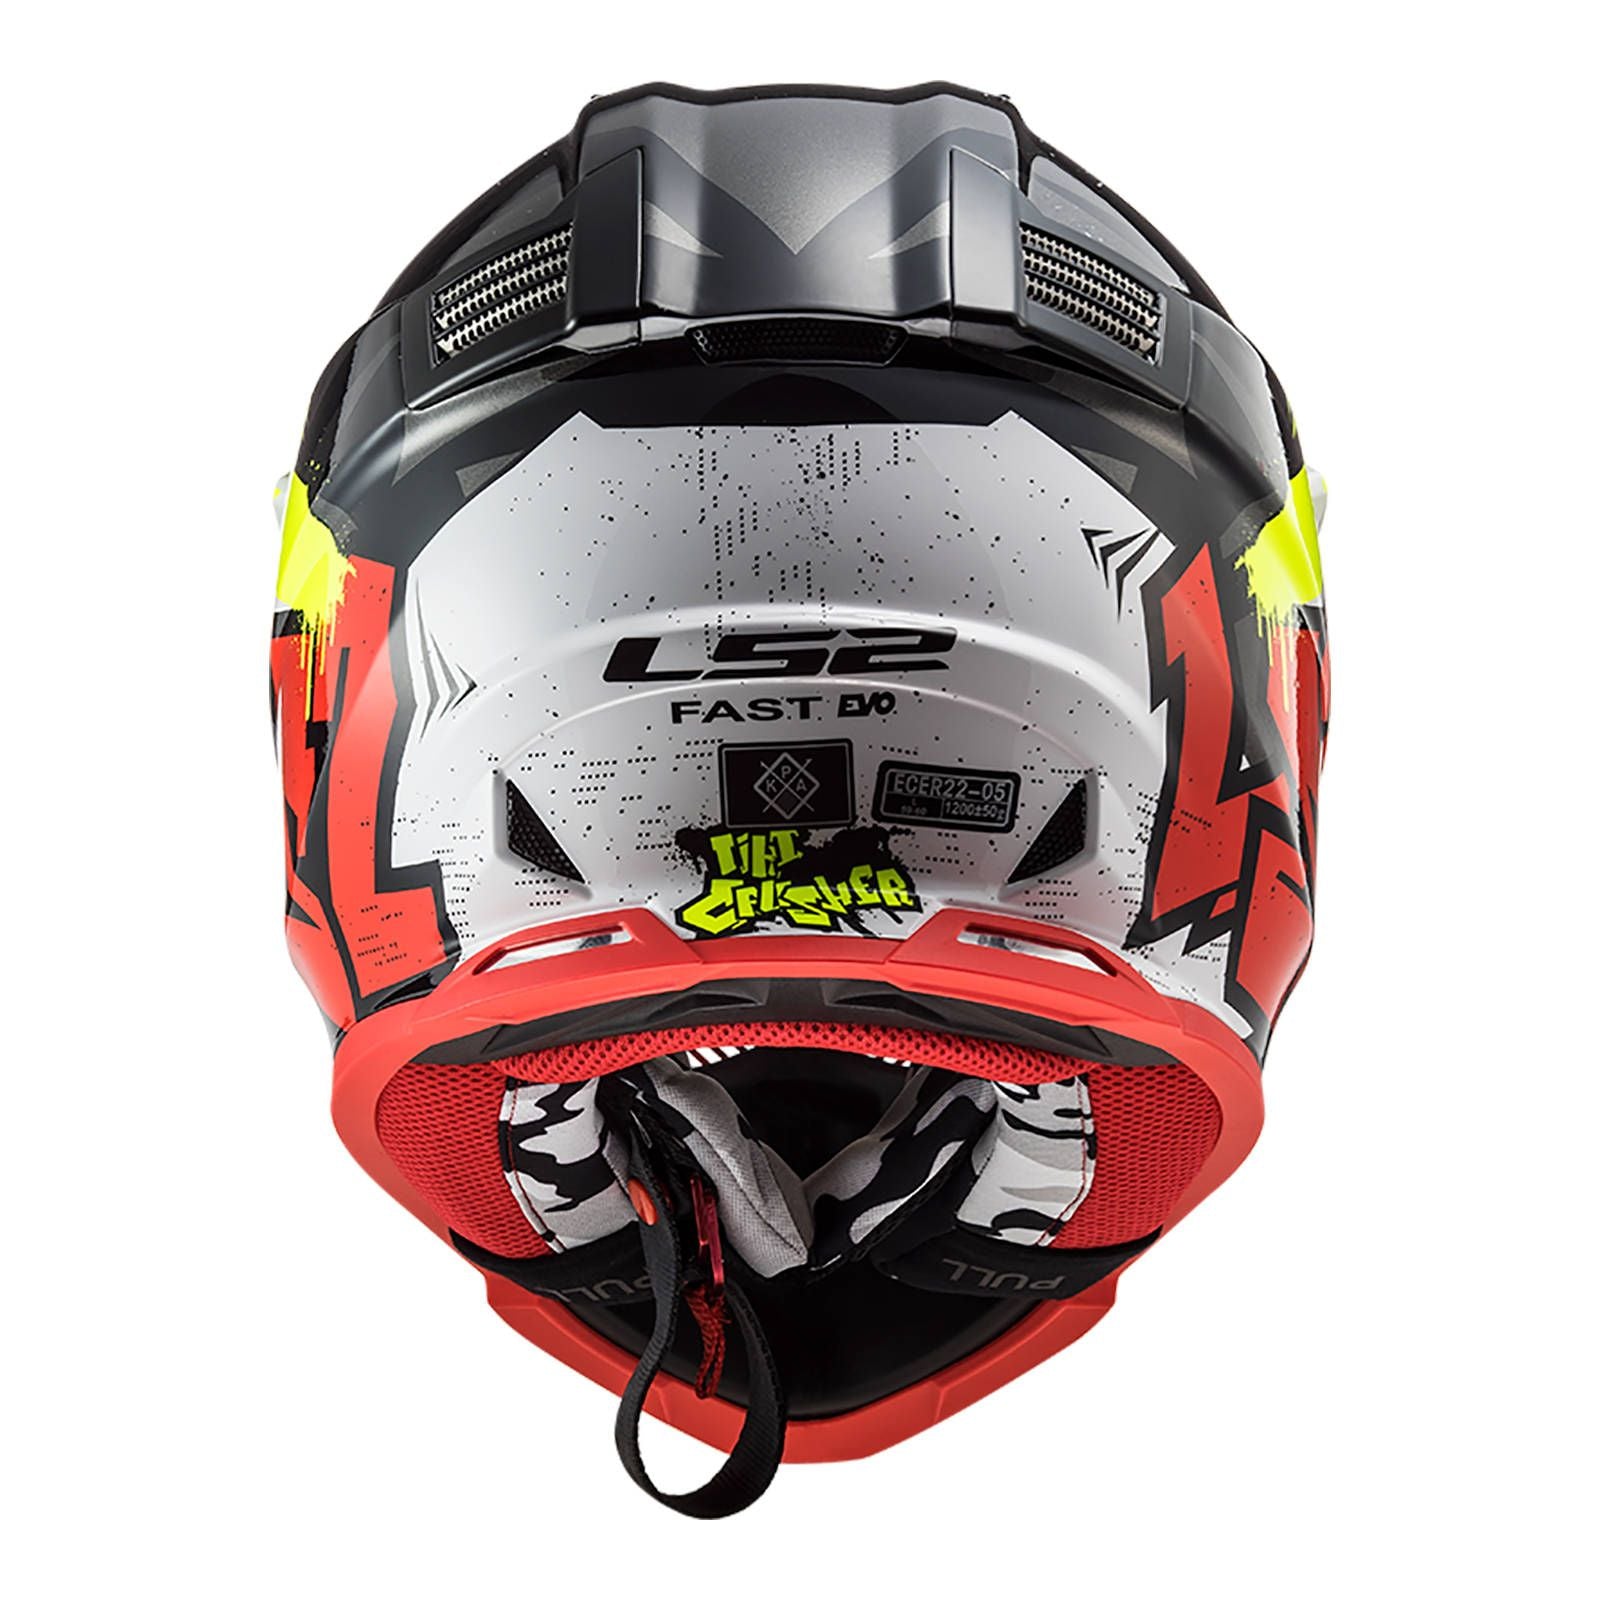 New LS2 MX437 Fast EVO Crusher Helmet - Black / Red / Grey (L) #LS2MX437CRBRGL